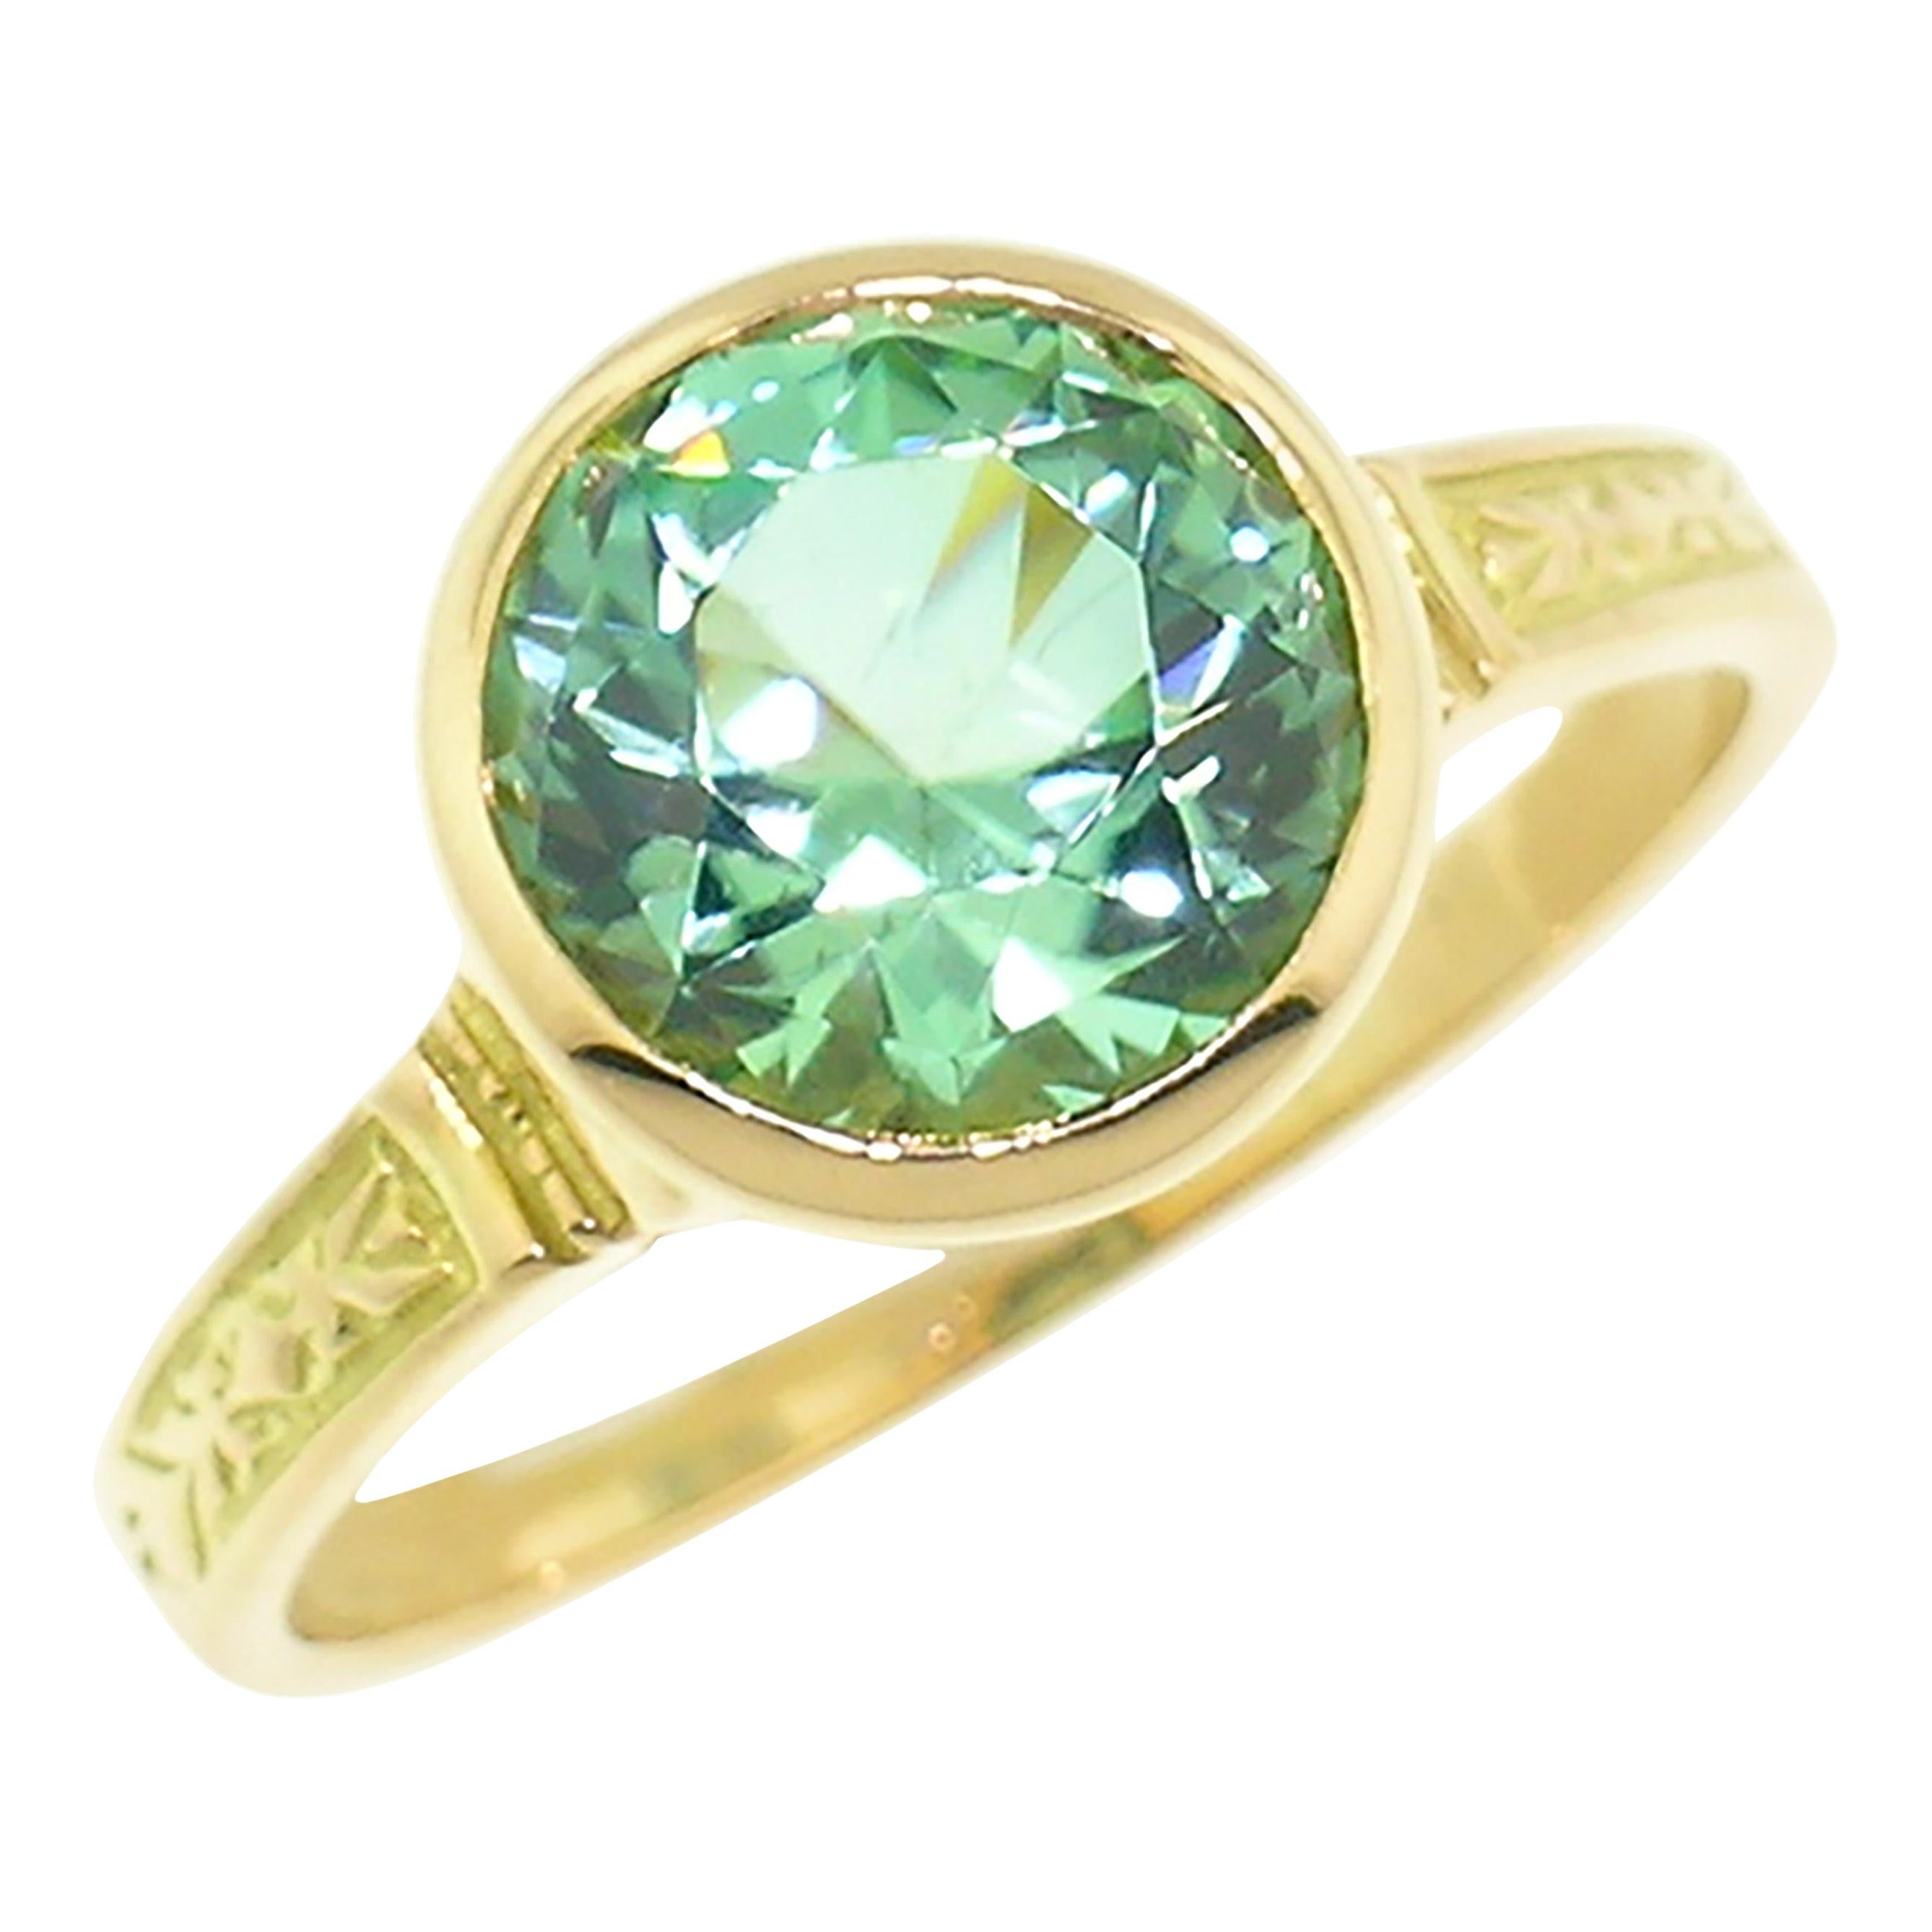 2,40 Karat mintgrüner Turmalin in 18 Karat Cassandra-Ring von Cynthia Scott Jewelry